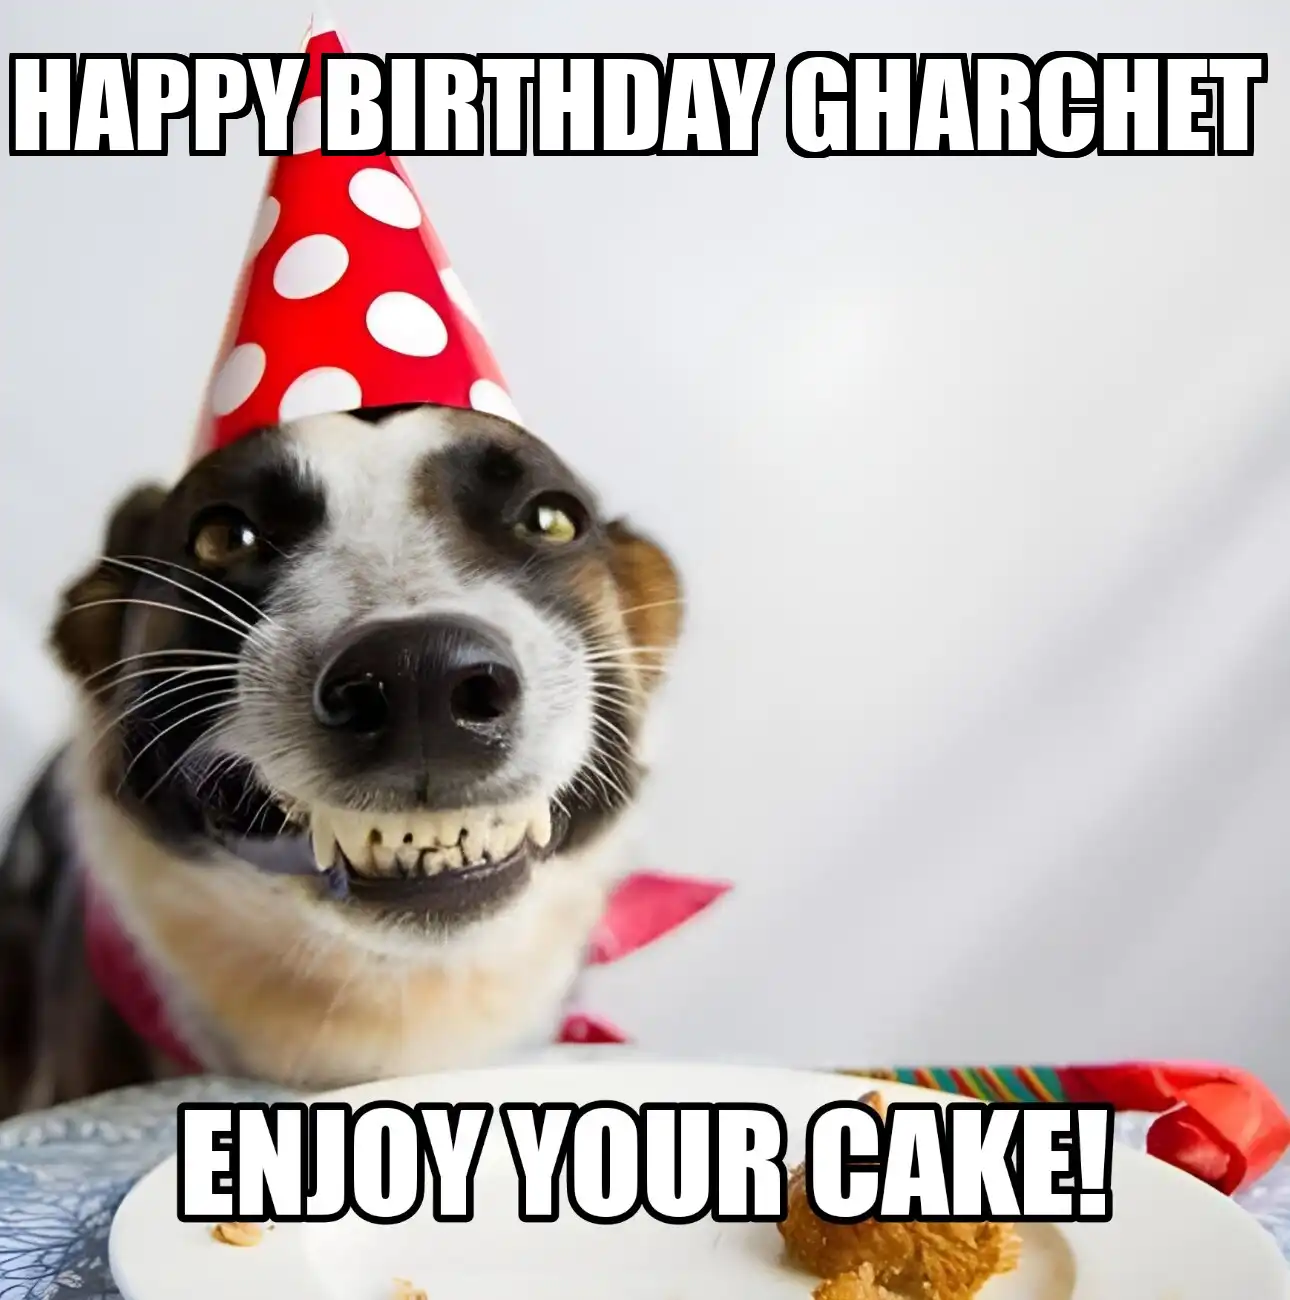 Happy Birthday Gharchet Enjoy Your Cake Dog Meme